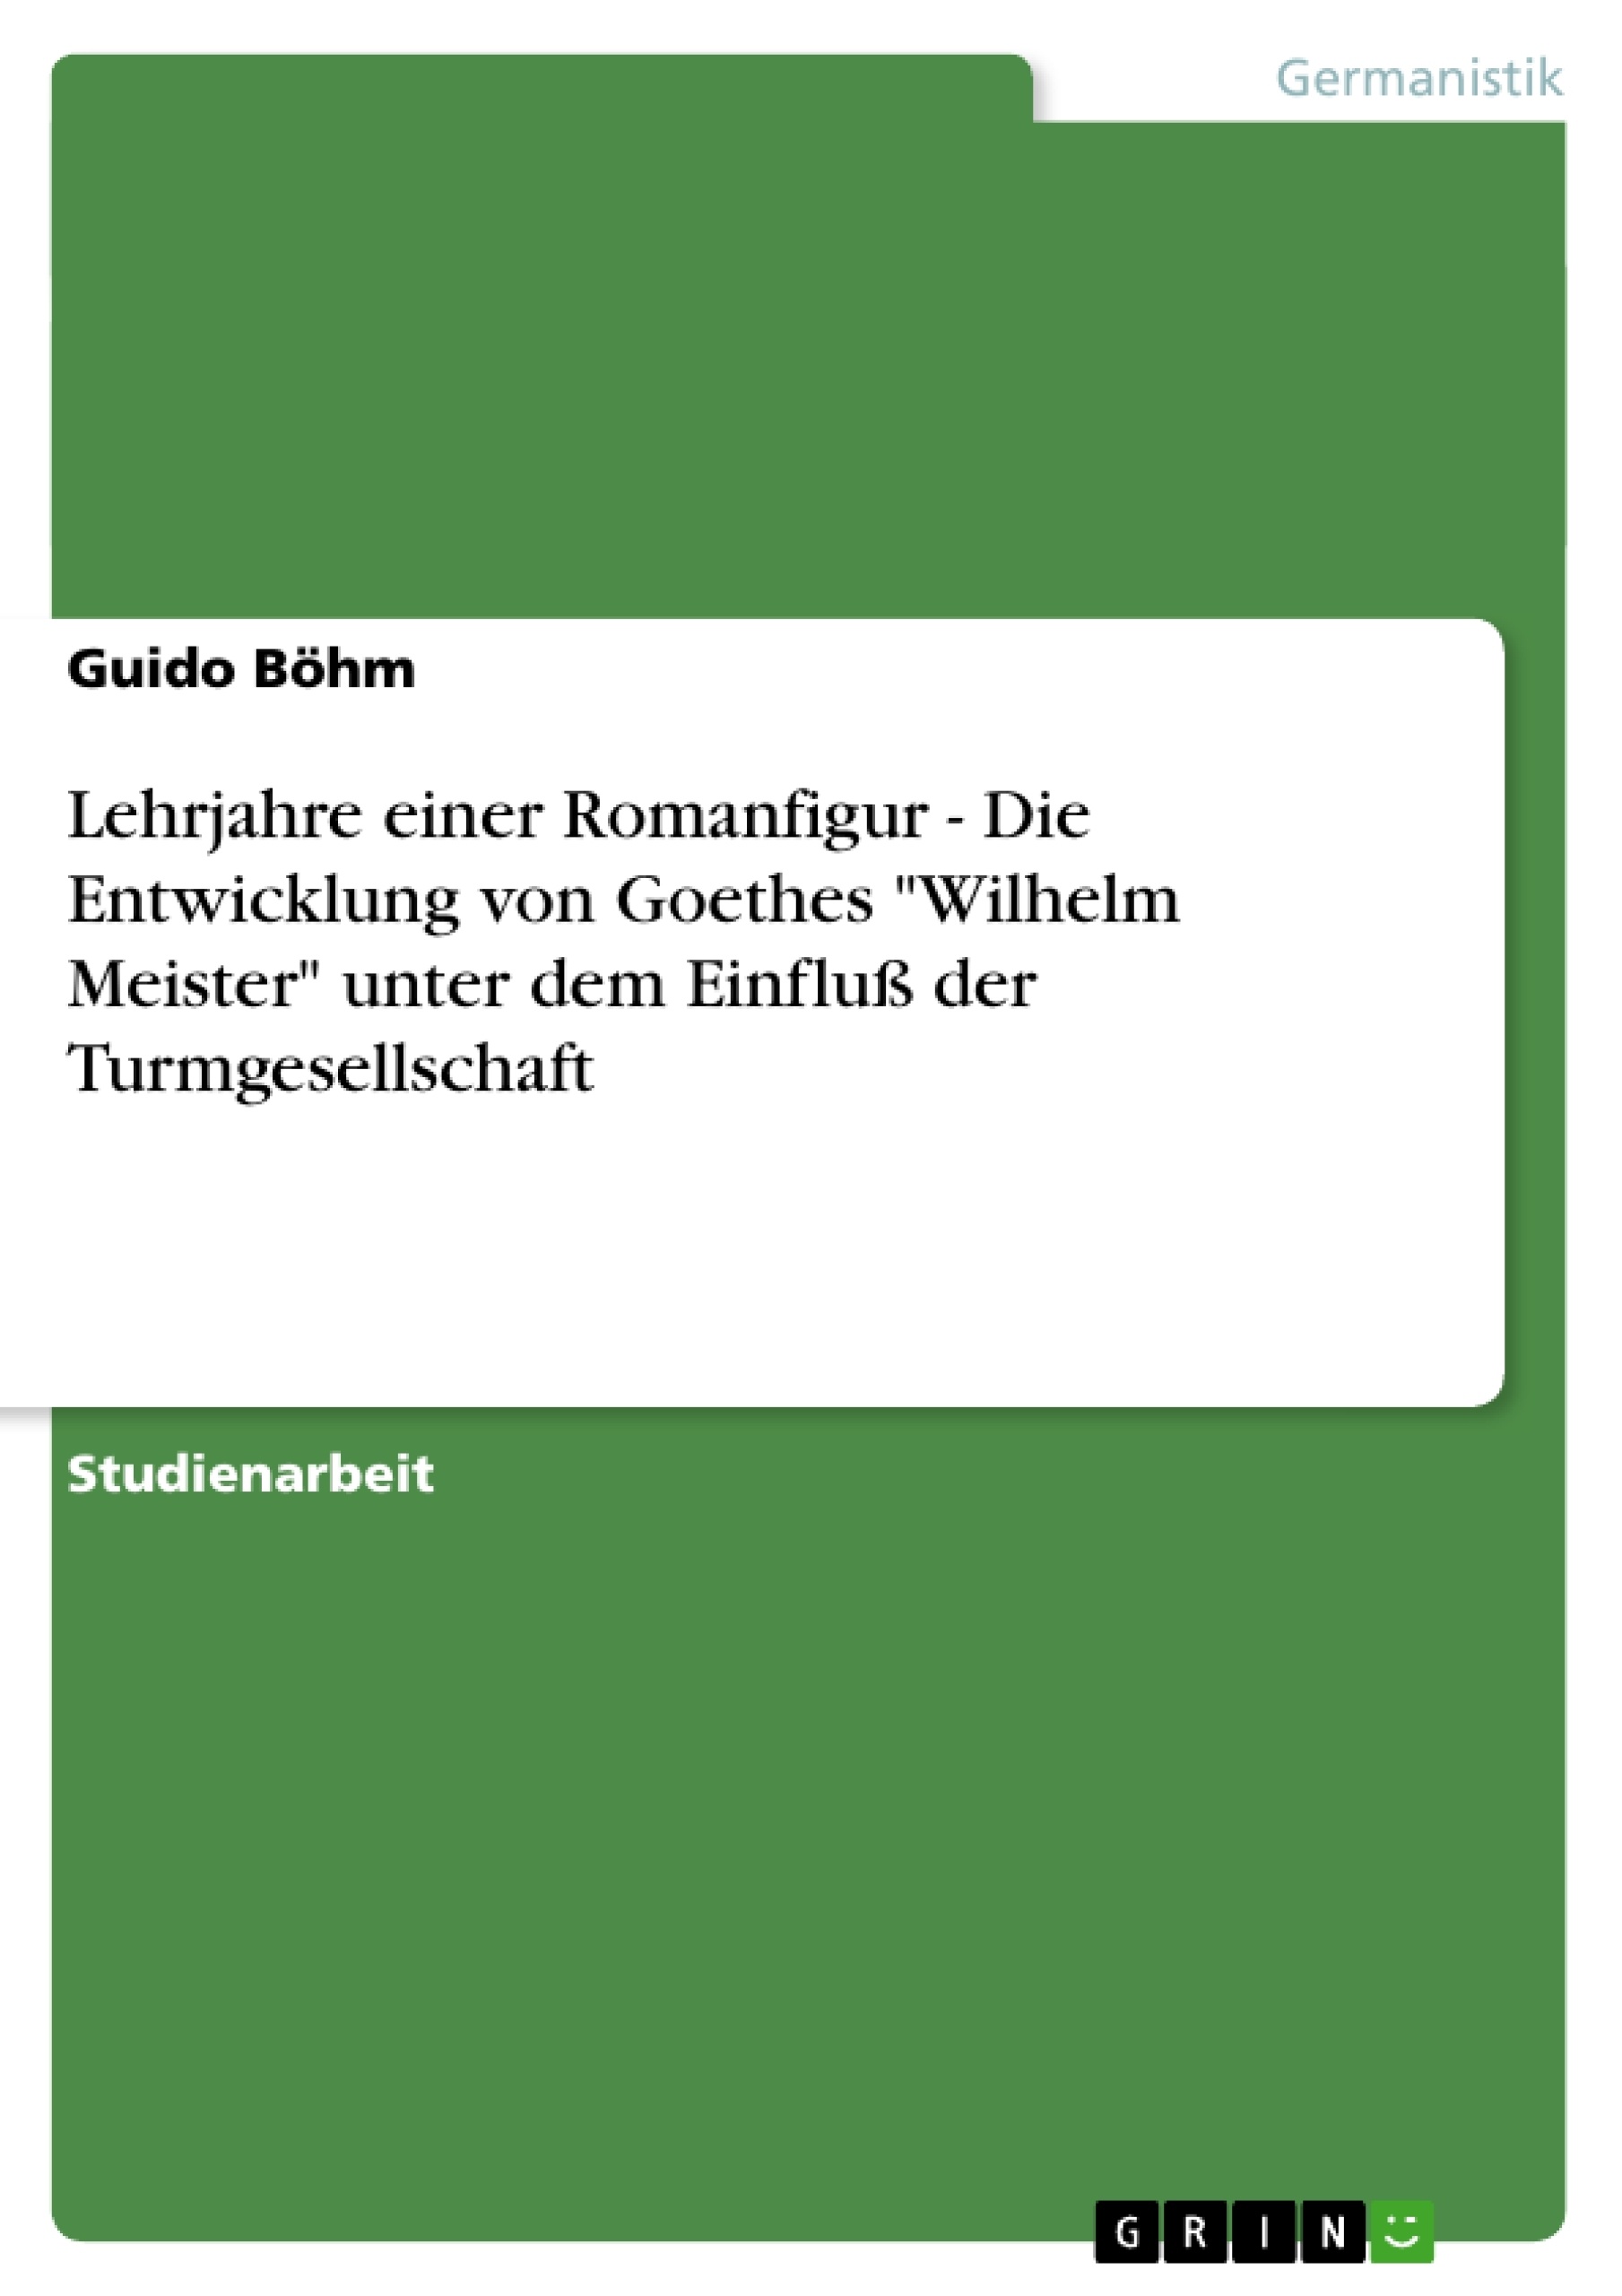 Titel: Lehrjahre einer Romanfigur - Die Entwicklung von Goethes "Wilhelm Meister" unter dem Einfluß der Turmgesellschaft